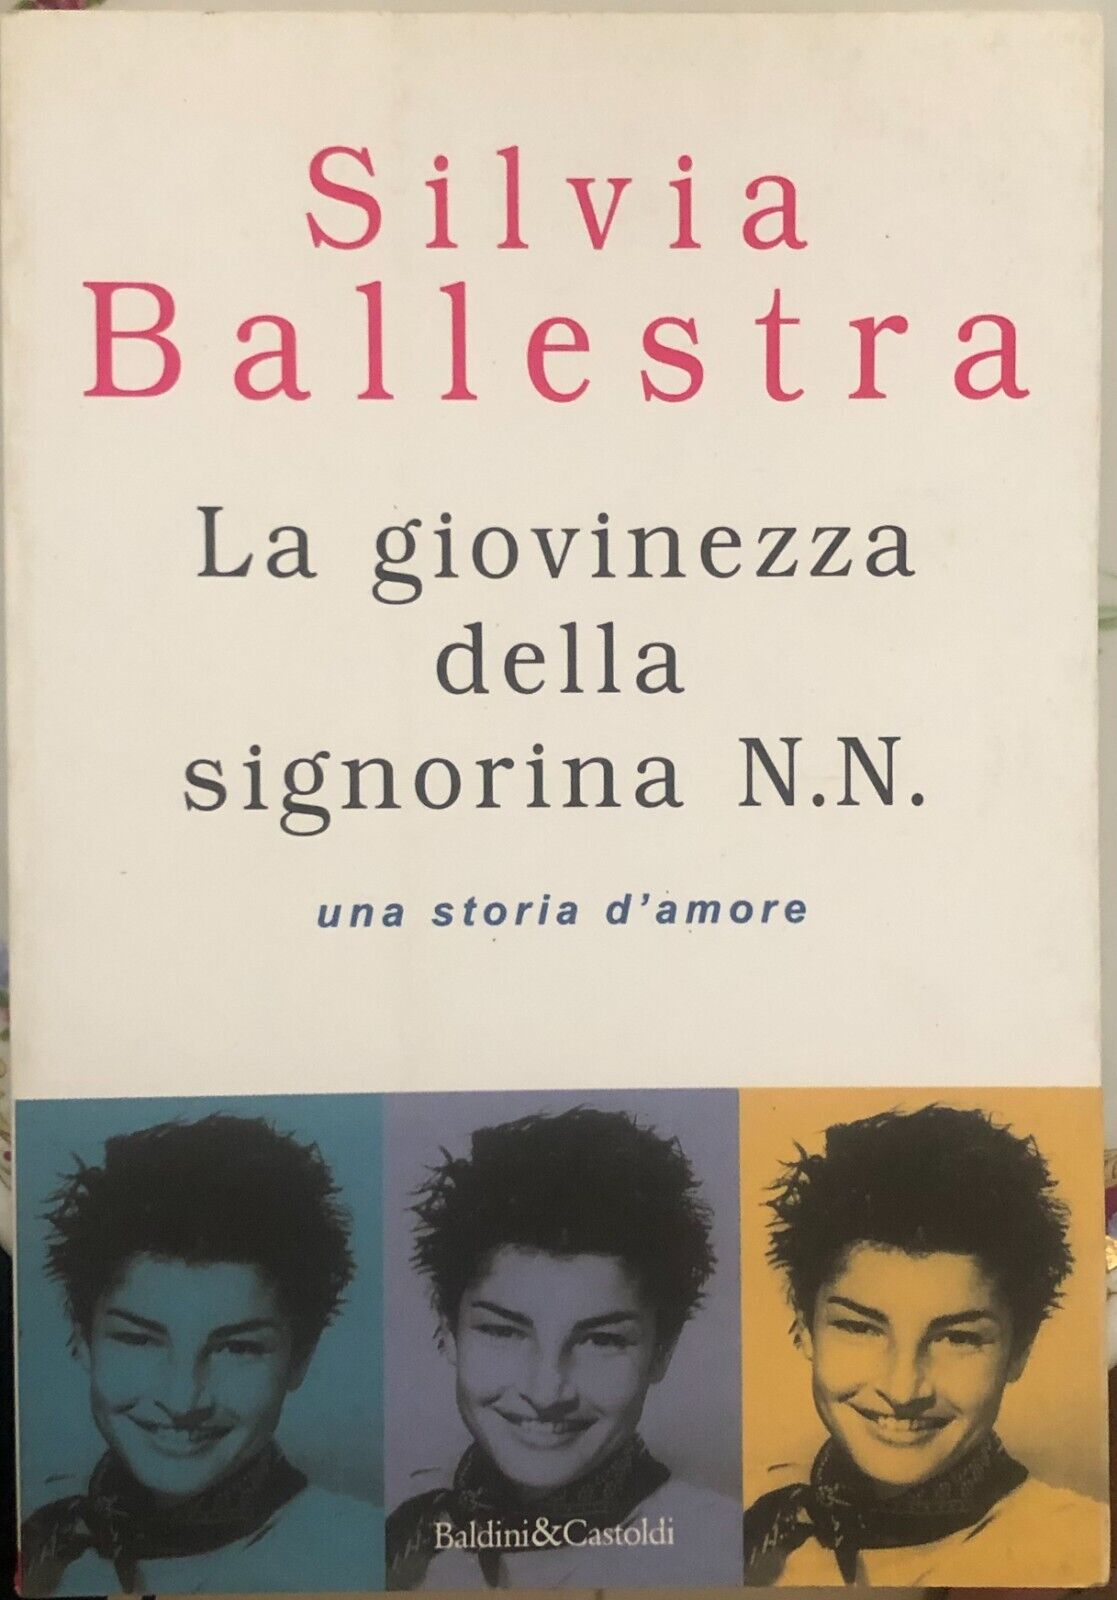 La giovinezza della signorina N. N. una storia d'amore di Silvia Ballestra,  199